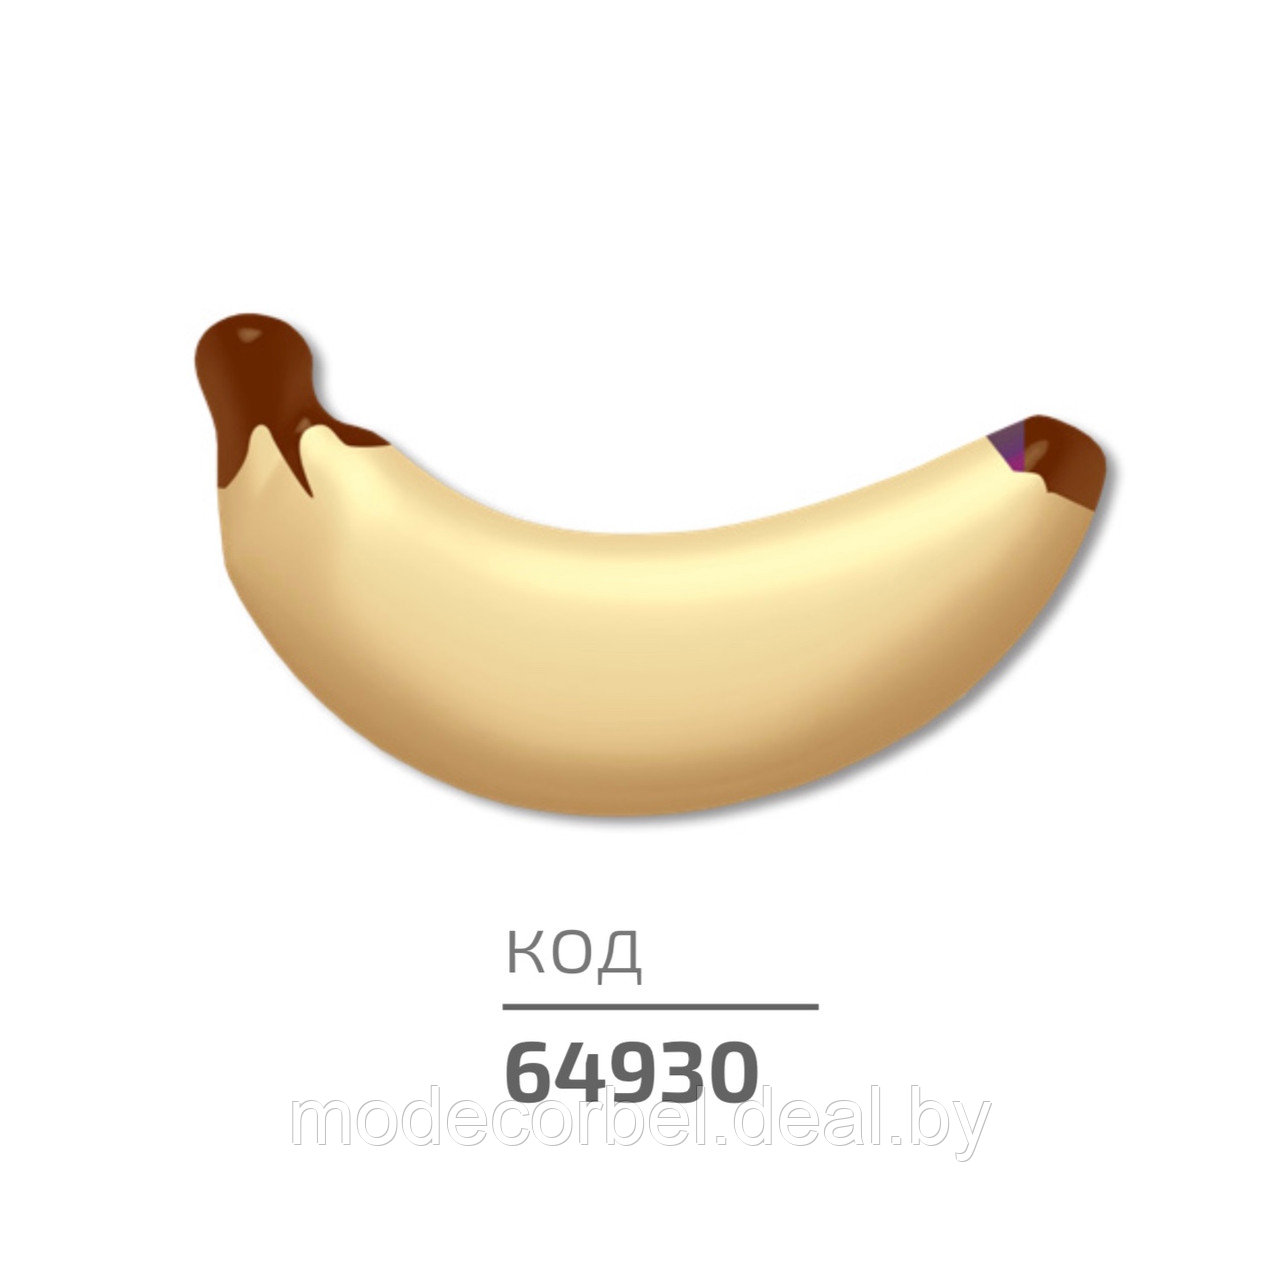 Украшение на основе кондитерской массы "Банан"